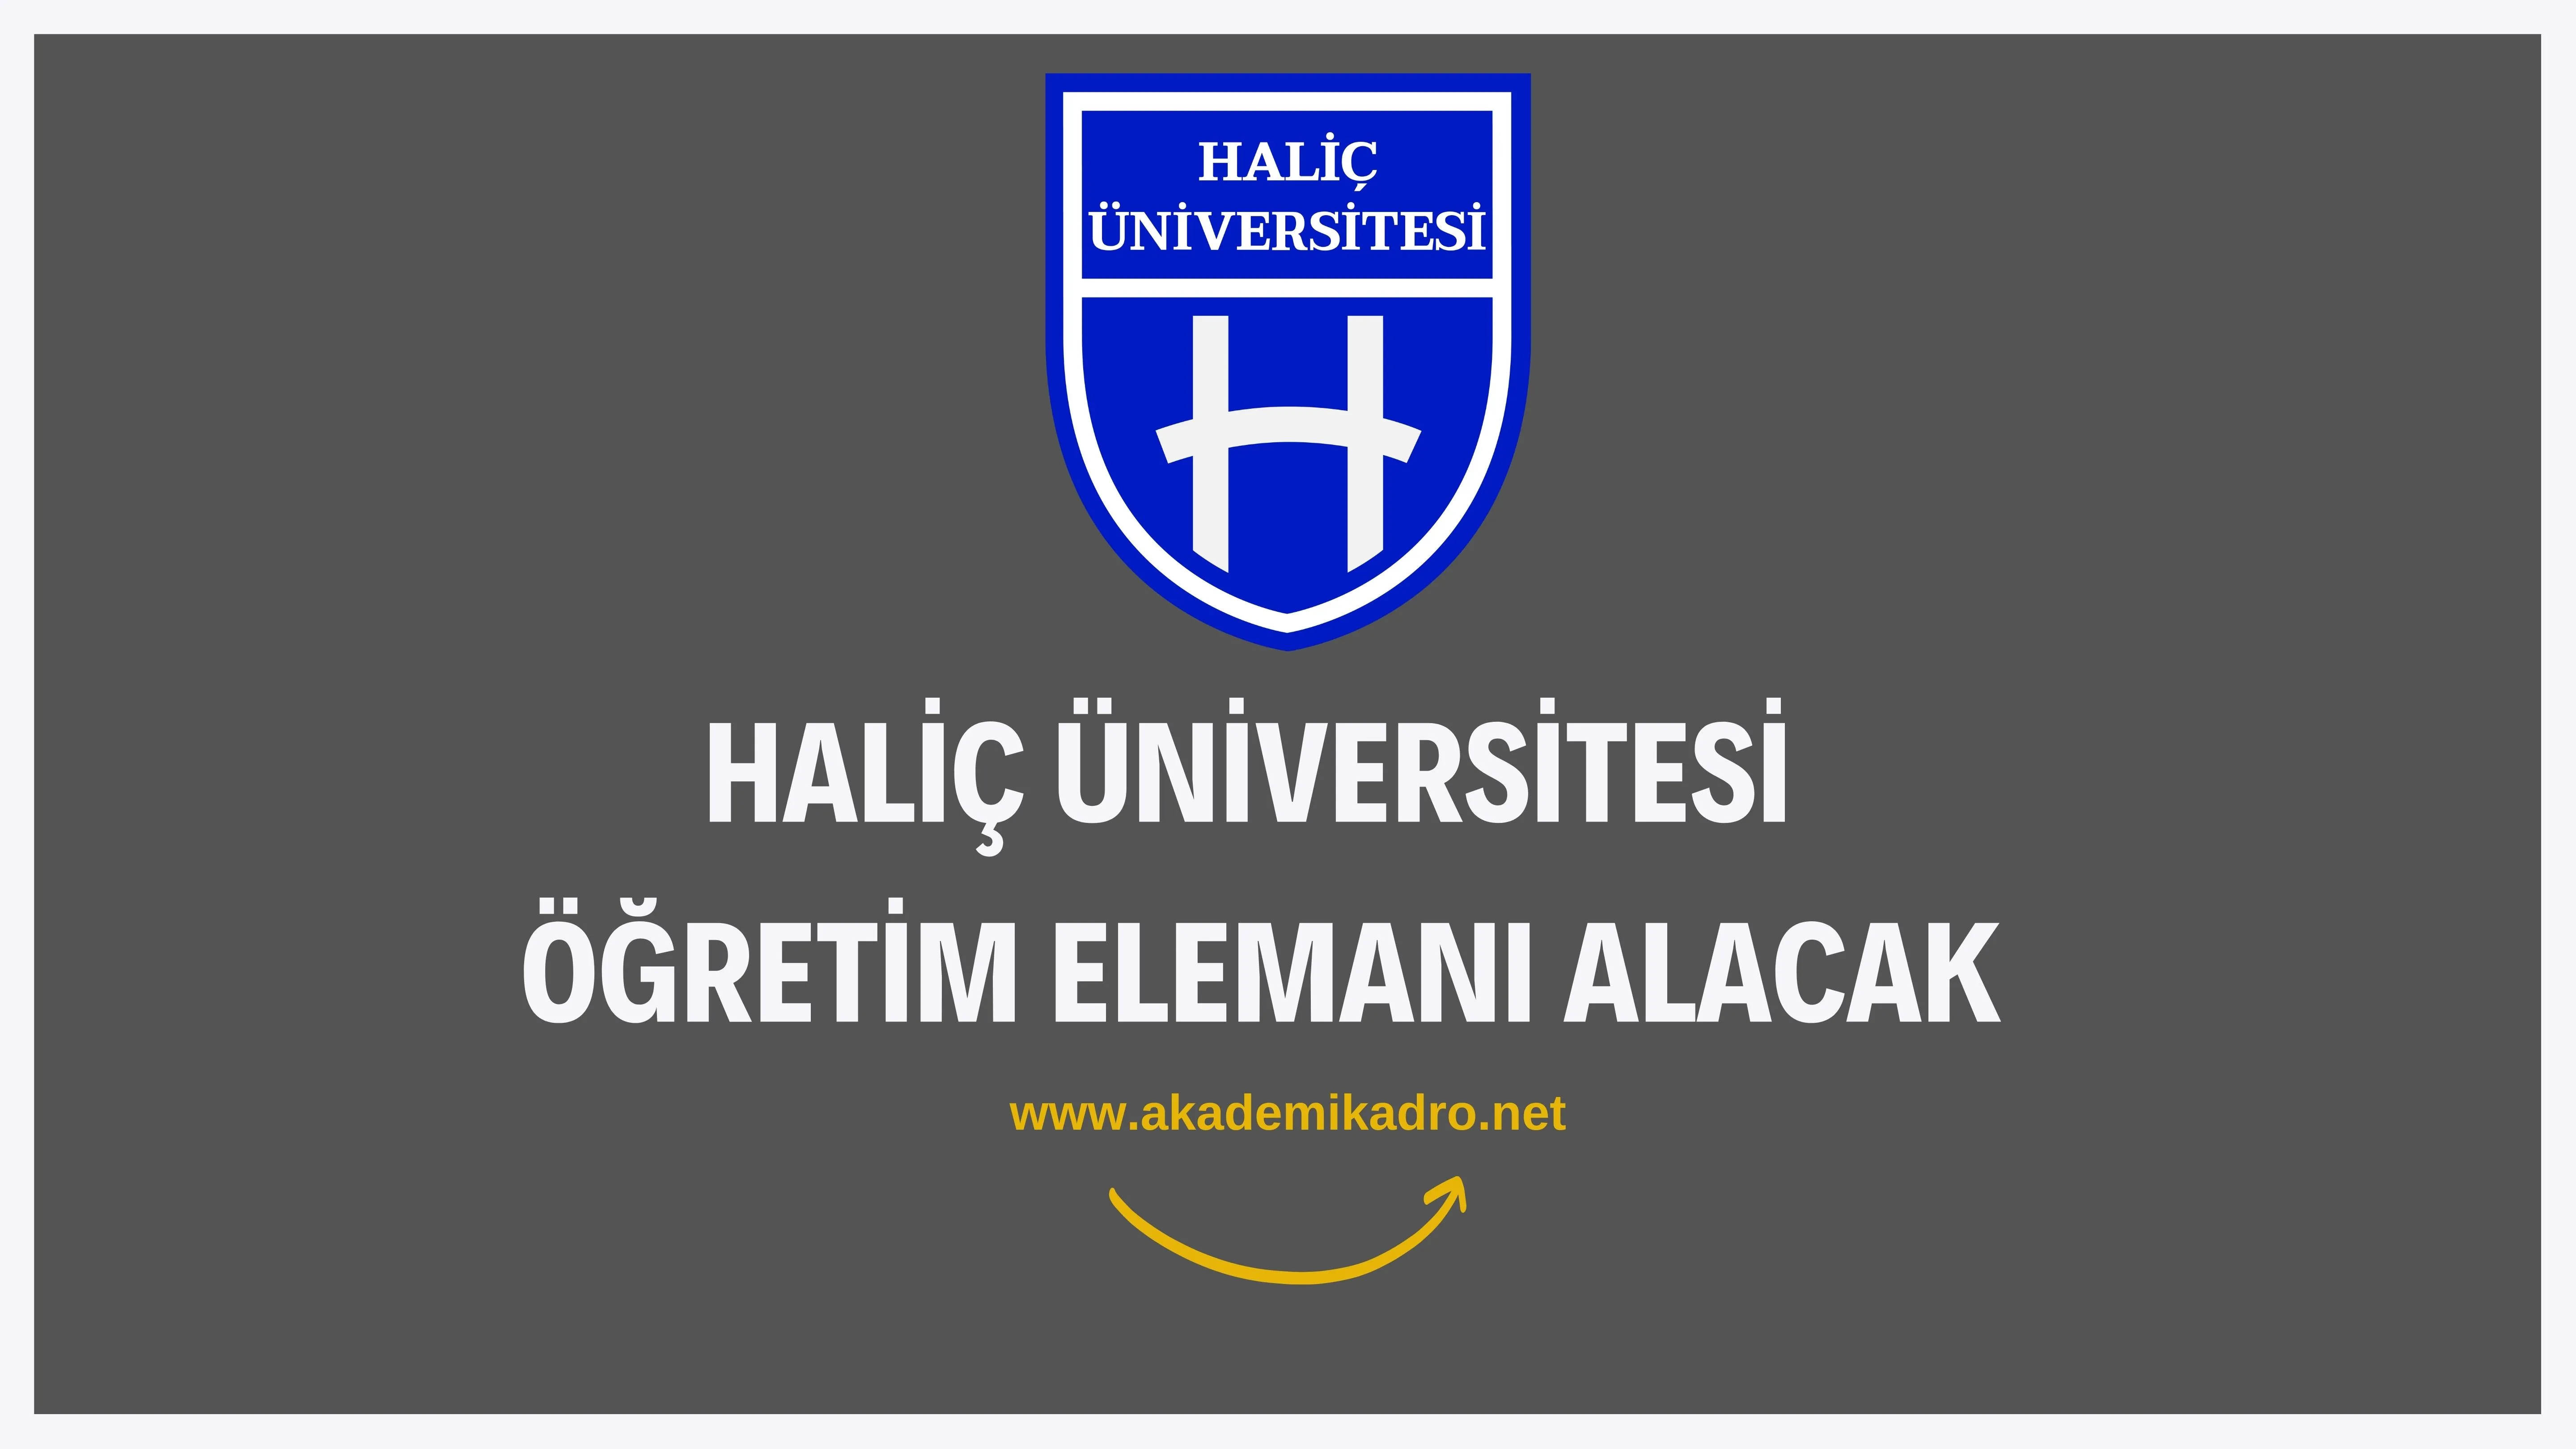 Haliç Üniversitesi 5 Araştırma görevlisi 14 öğretim üyesi alacaktır.